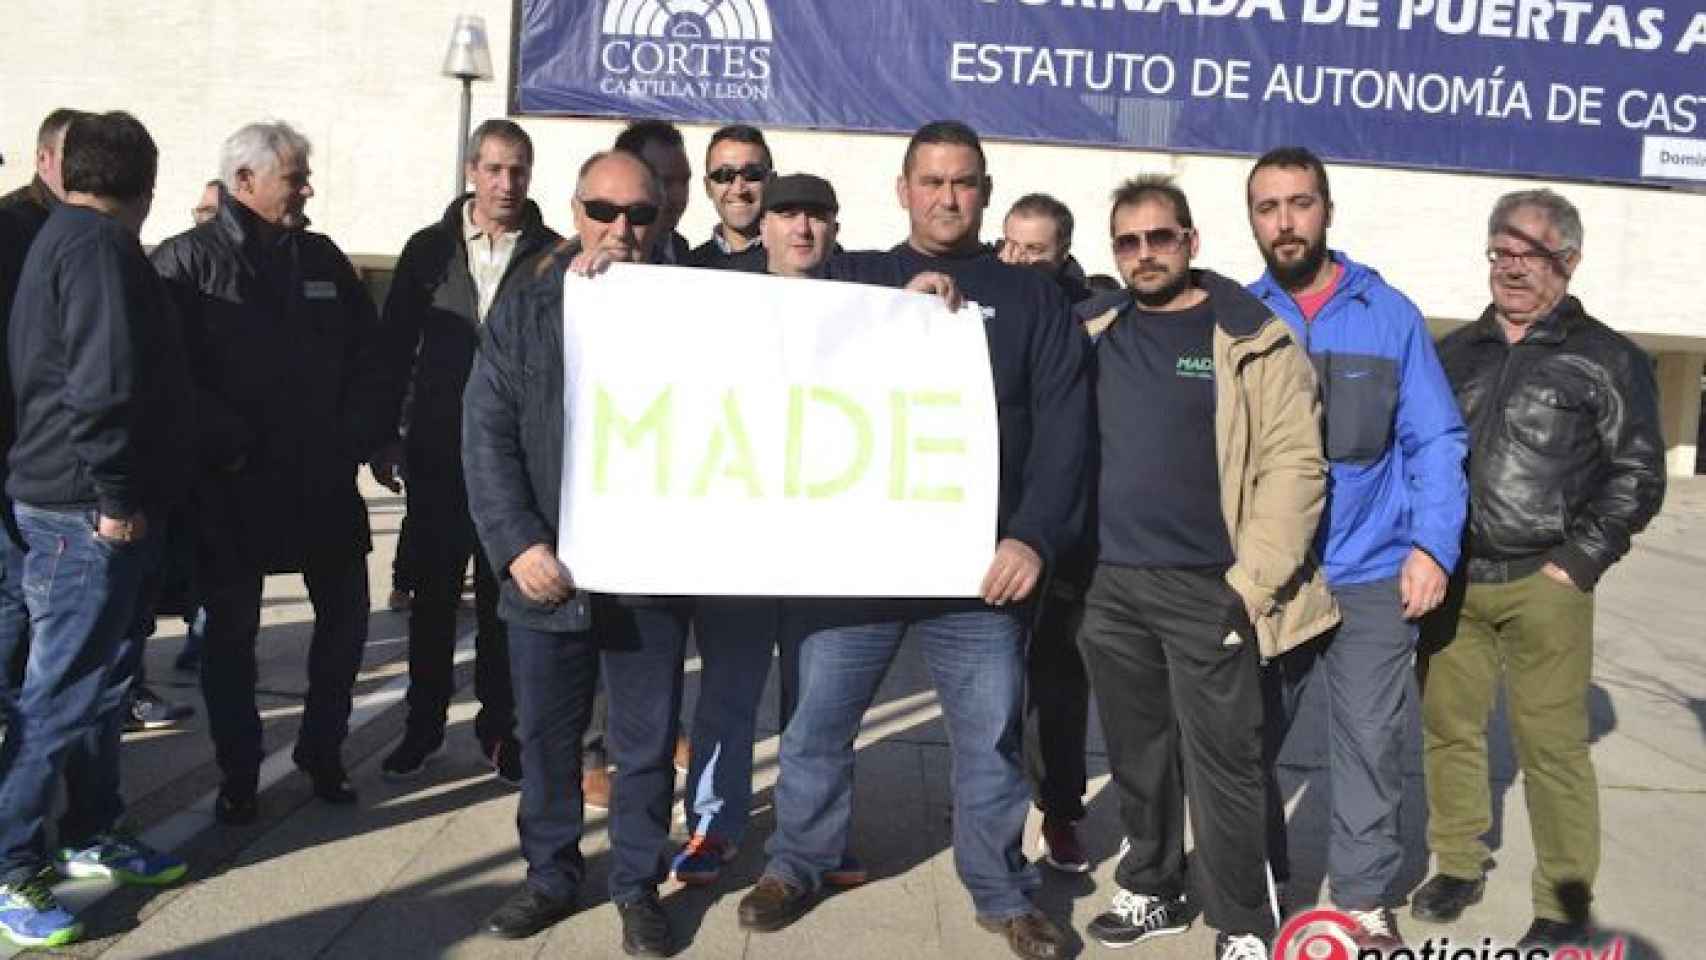 Valladolid-Made-cortes-manifestacion-004